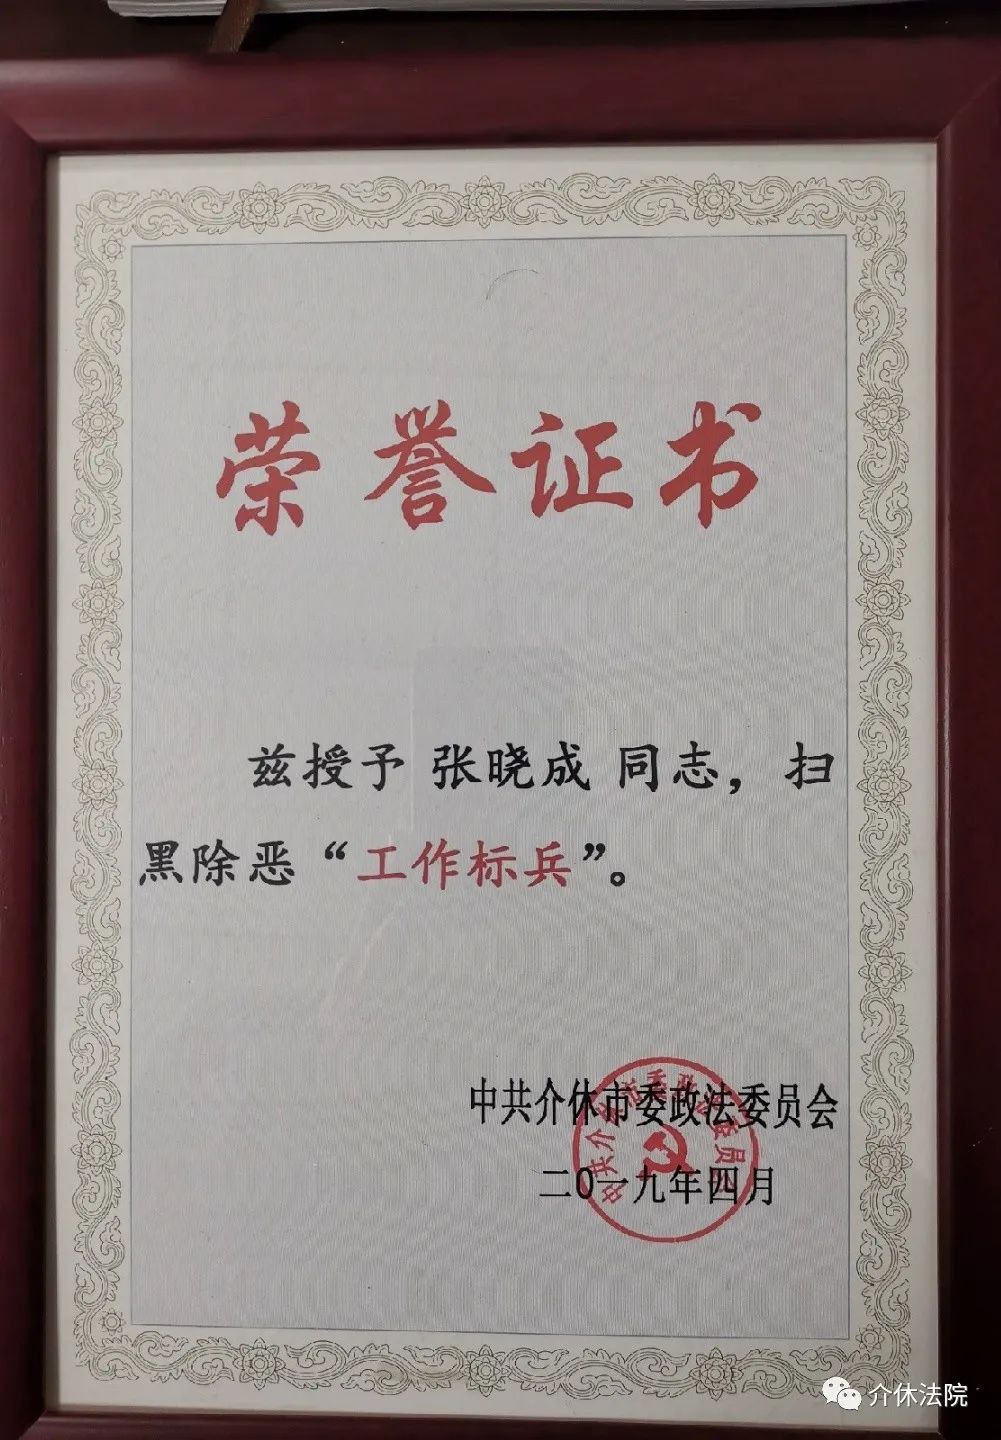 【荣誉奖章】张晓成,男,39岁,中共党员,大学本科学历,历任介休市人民